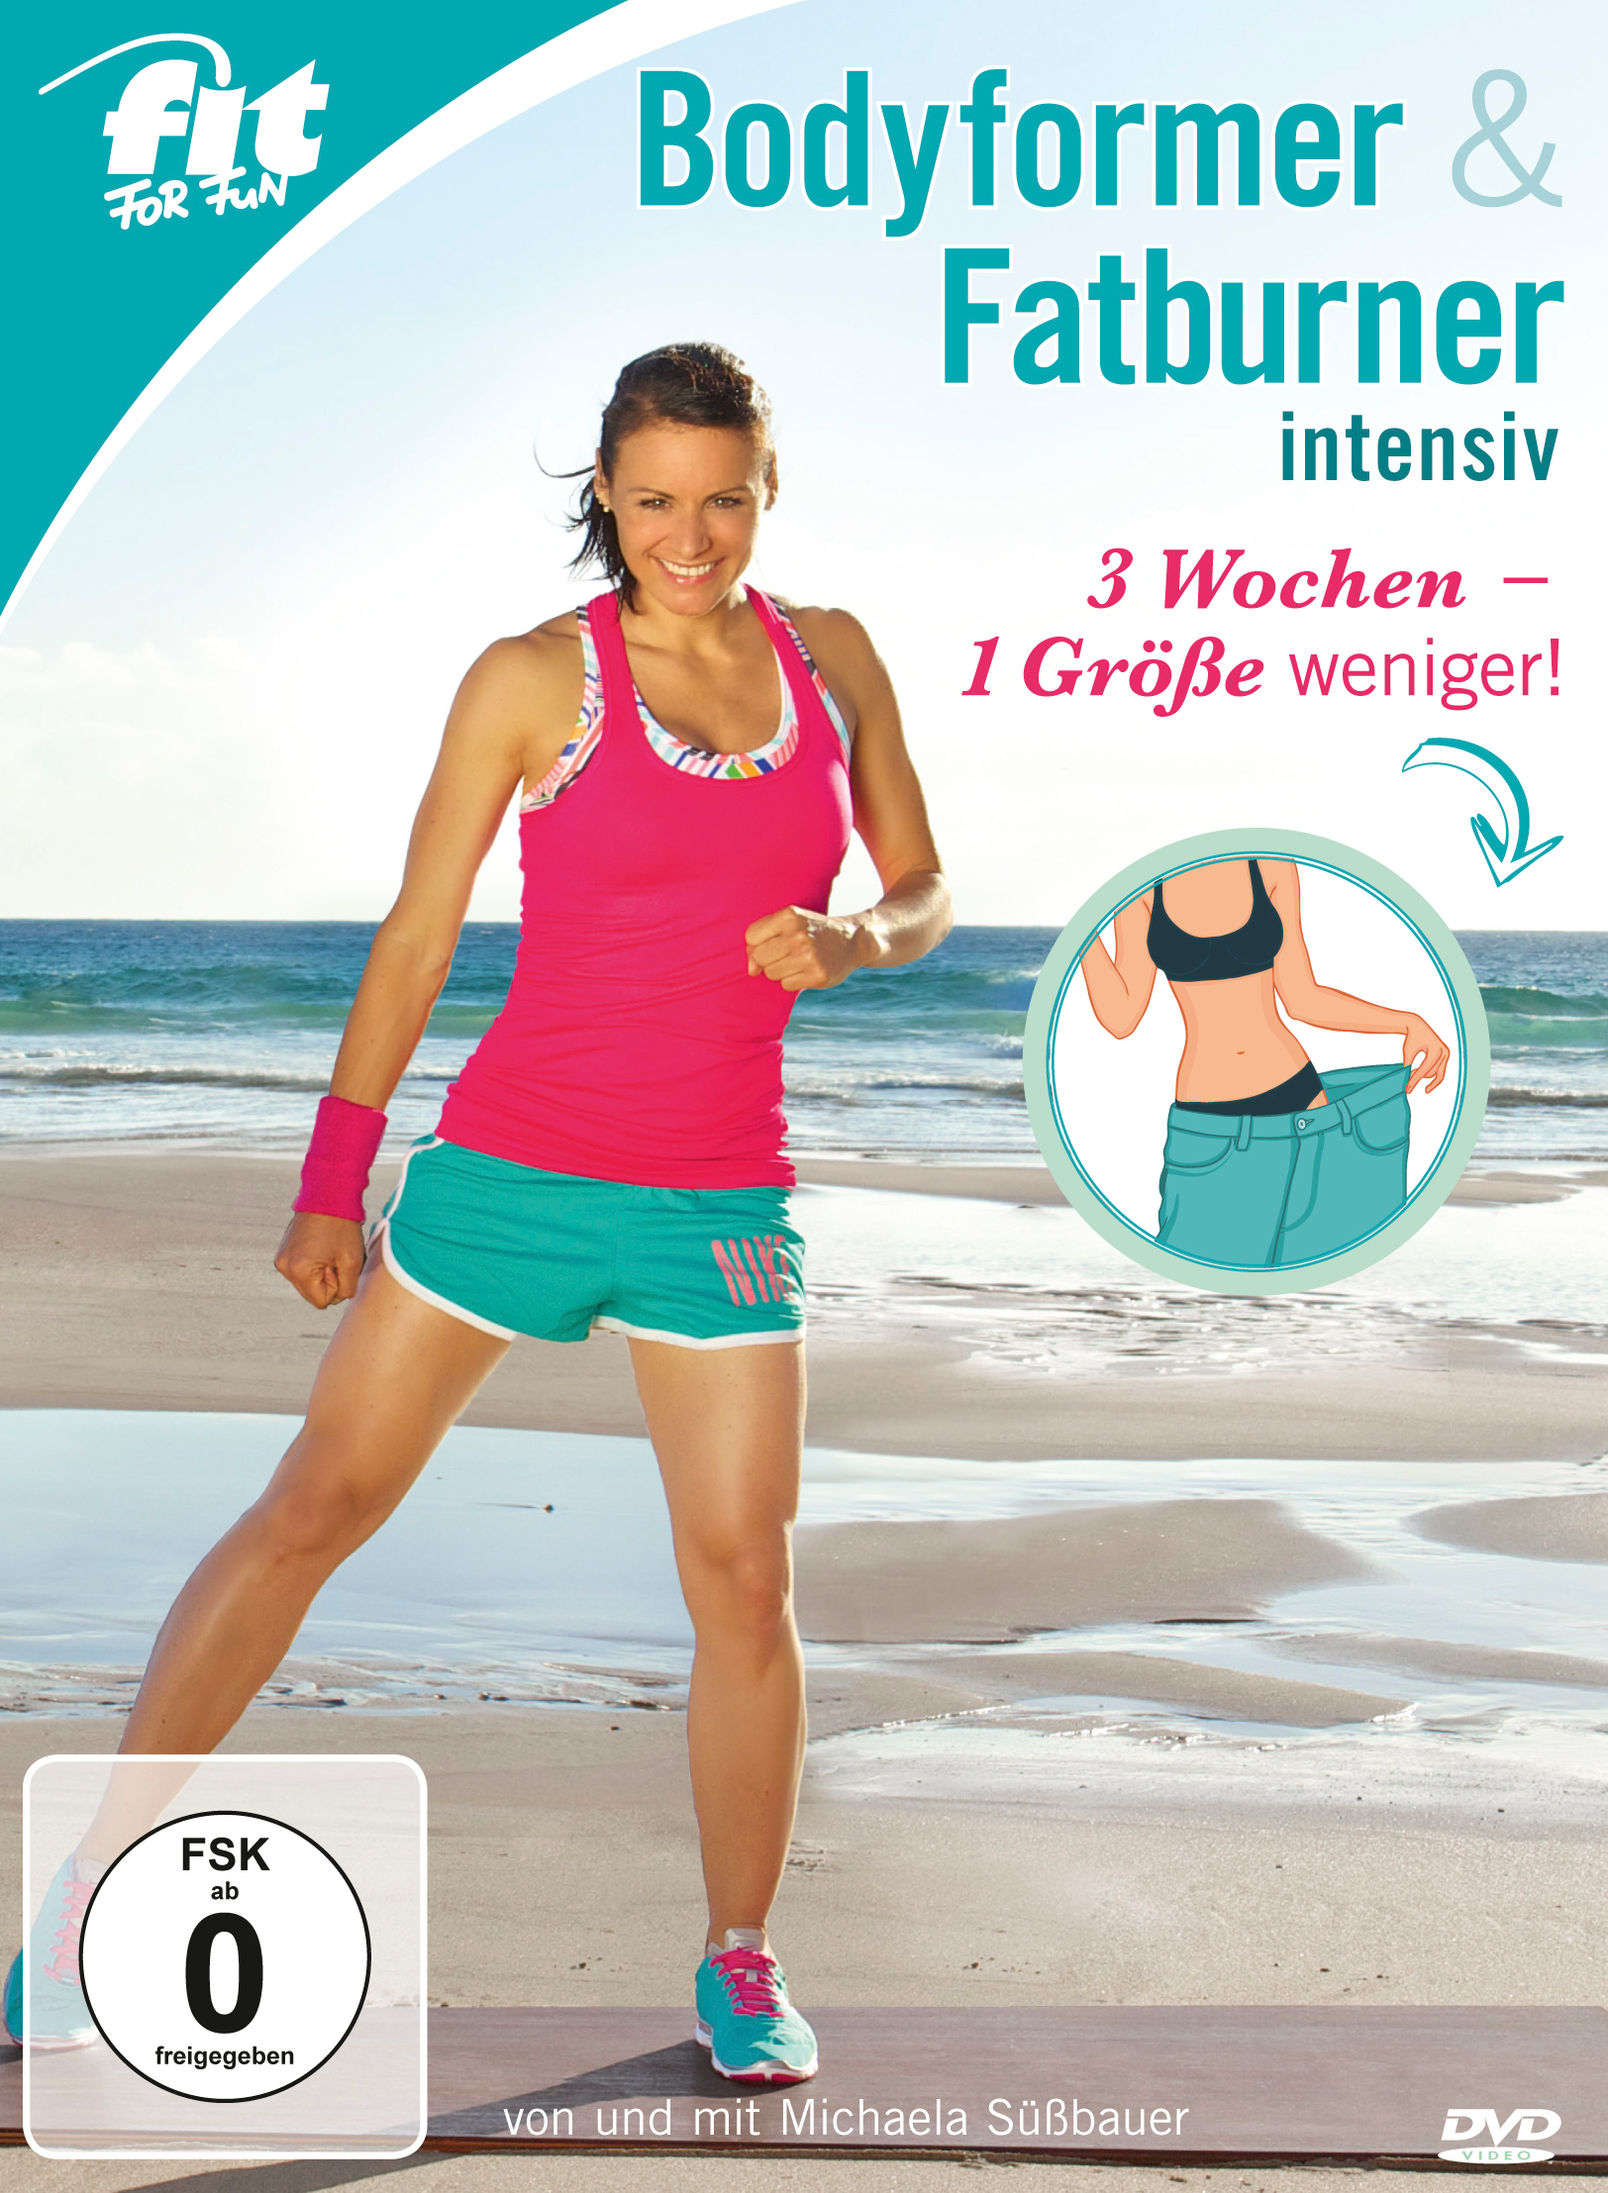 Fit for Fun - Bodyformer & Fatburner intensiv DVD | Weltbild.de